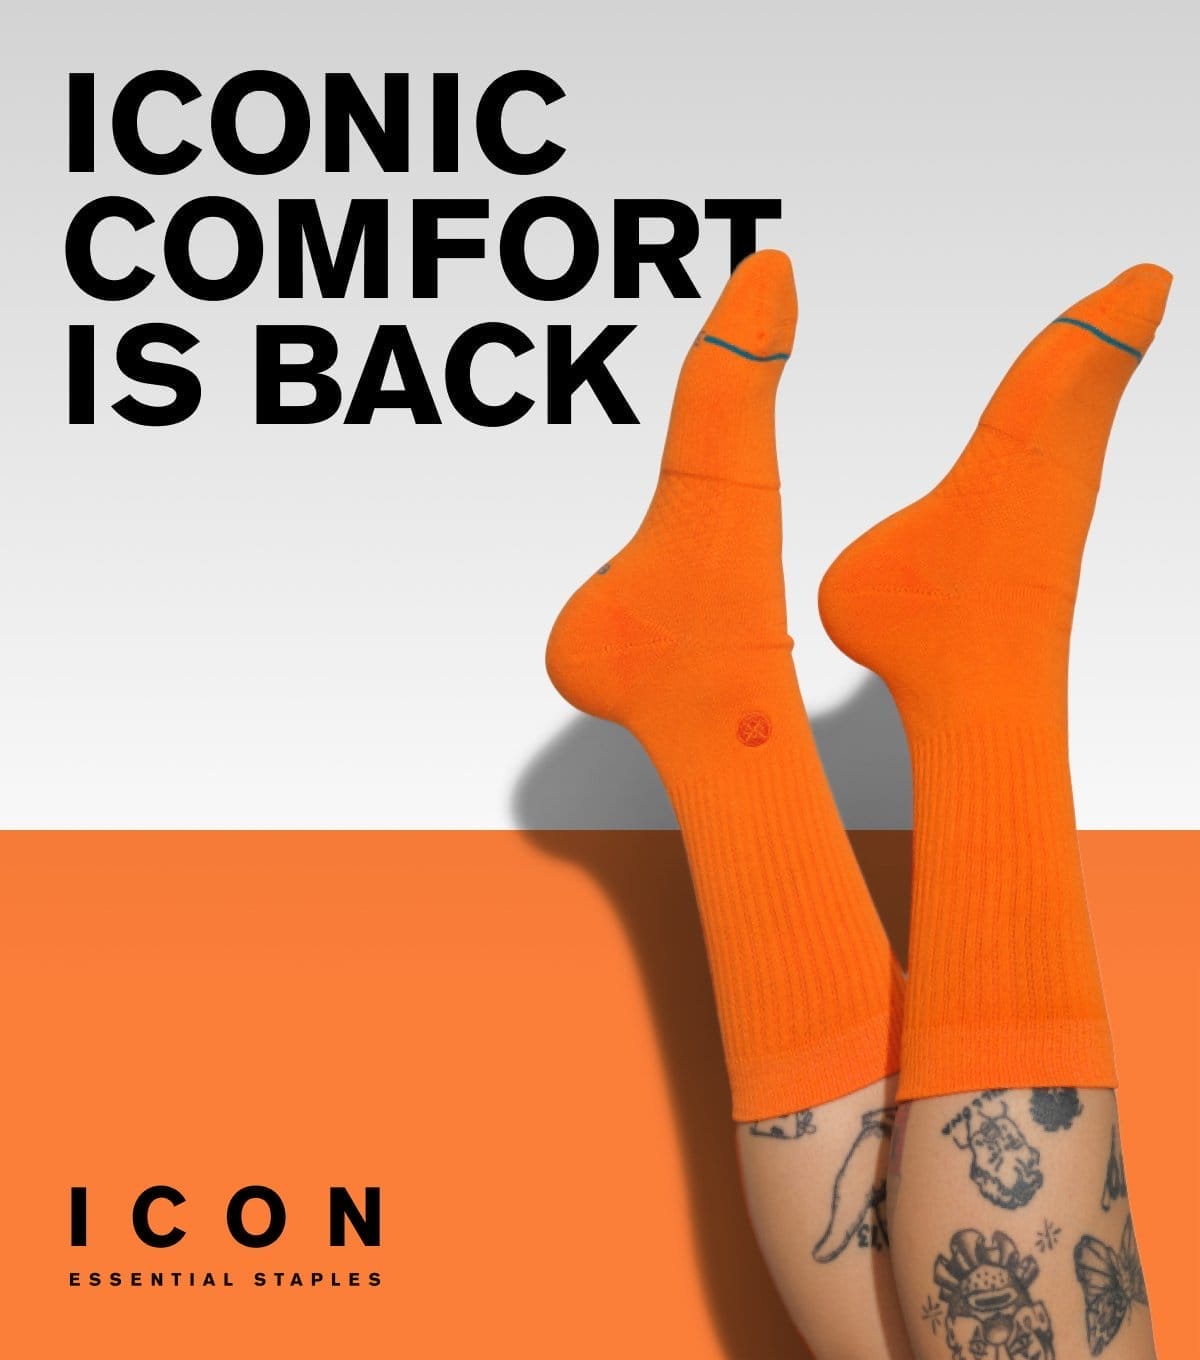 Icon Shop